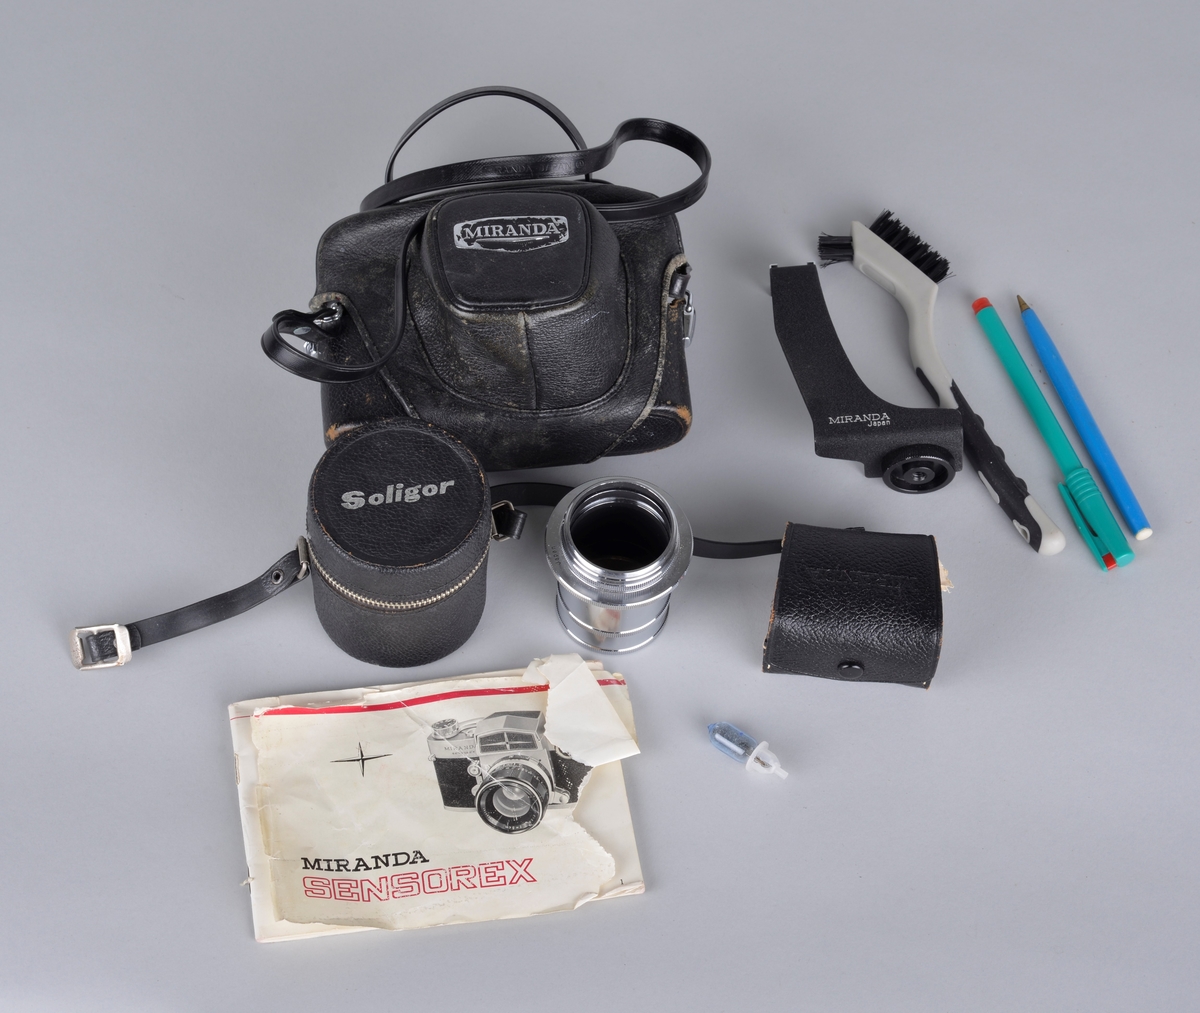 Analogt fotoapparat av typen Miranda Sensorex. 
Plassert i fotbag med tilleggsutstyr: ekstra linse og objektiv, bruksanvisning, børste for renhold, blitslampe og skrivemateriell.